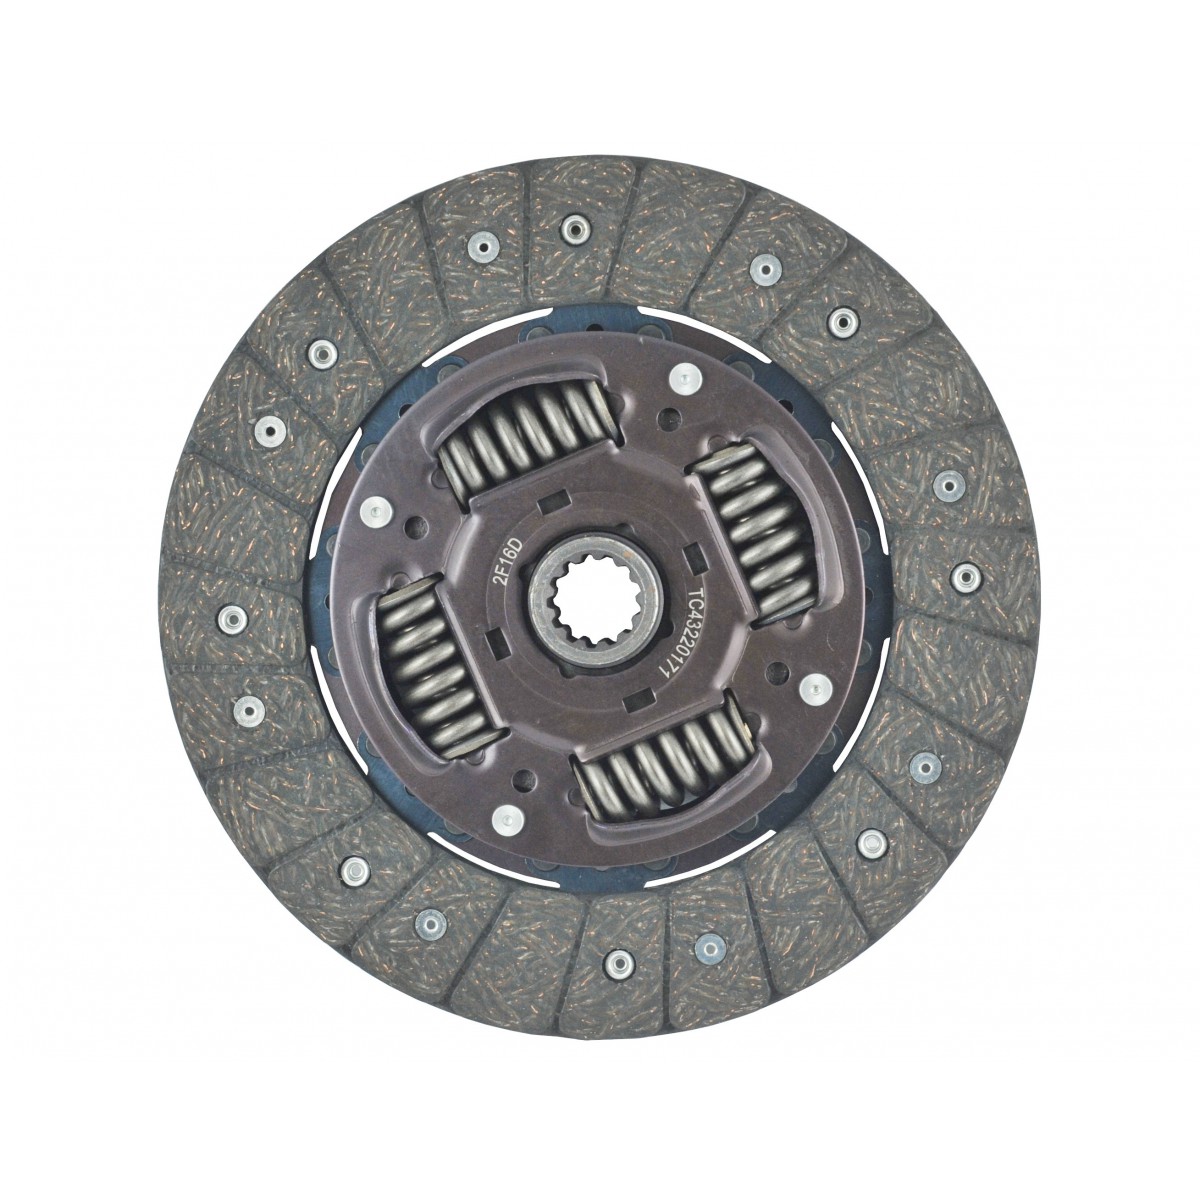 Clutch disc 9 1/2 "x 13T Kubota L4508, L4708, L5018